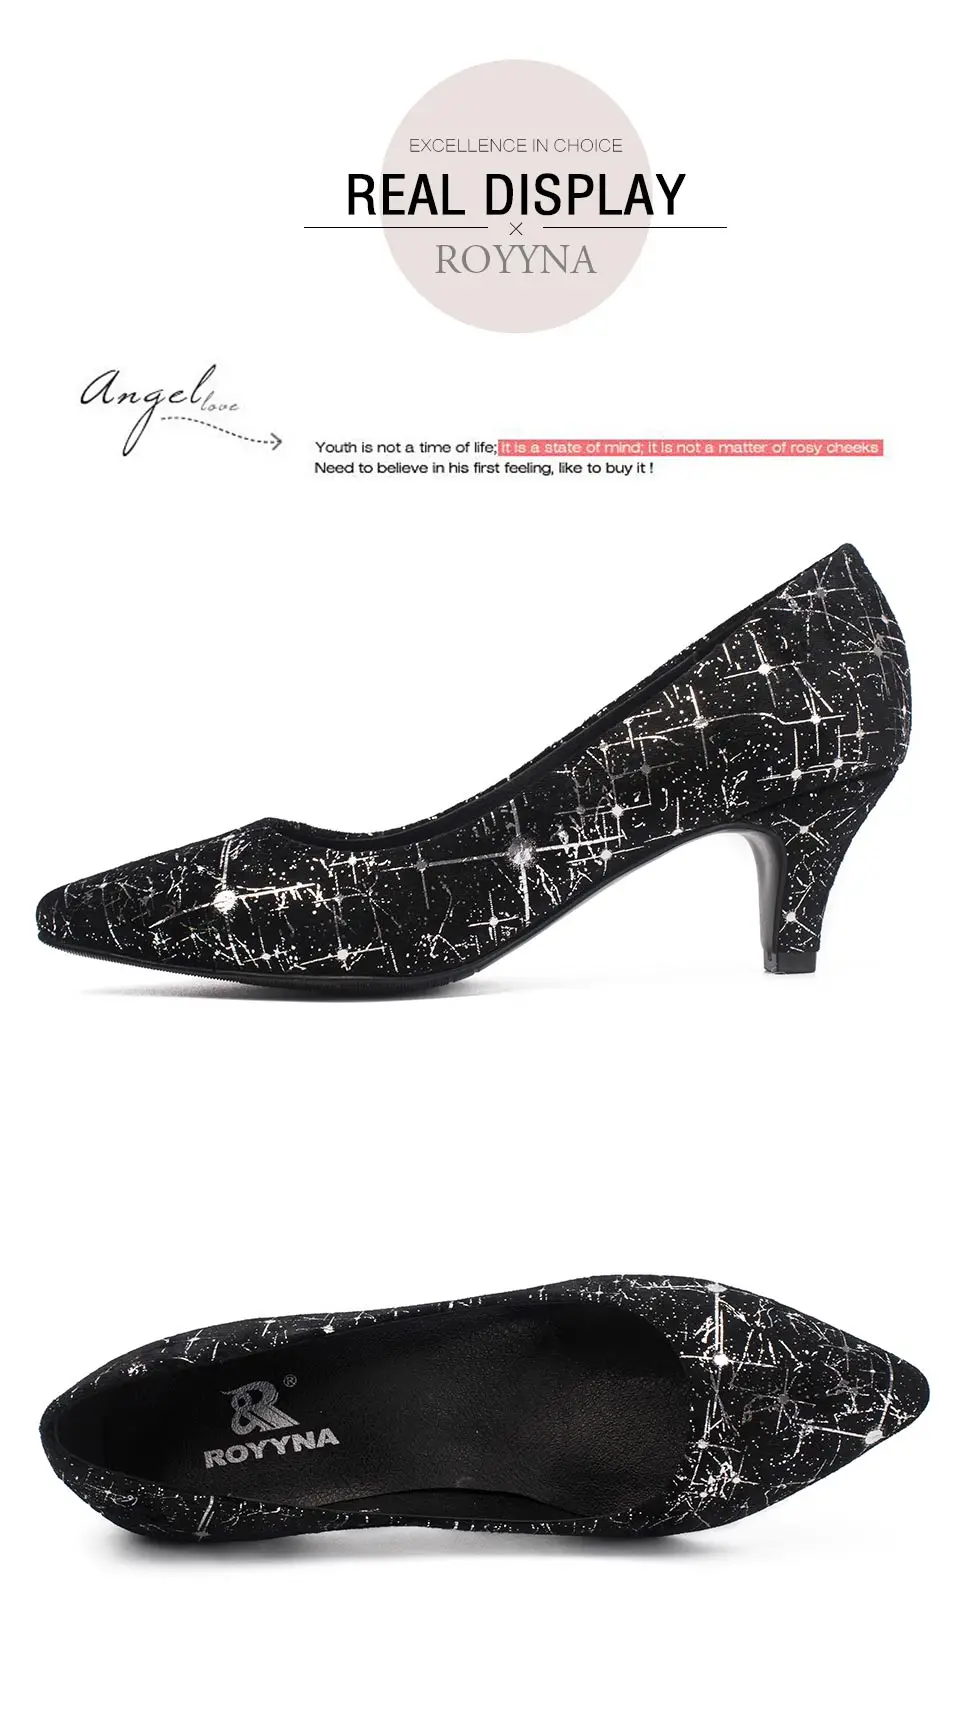 ROYYNA/Новое поступление; классические женские туфли-лодочки; женские модельные туфли с острым носком; женские свадебные туфли на тонком каблуке; светильник;